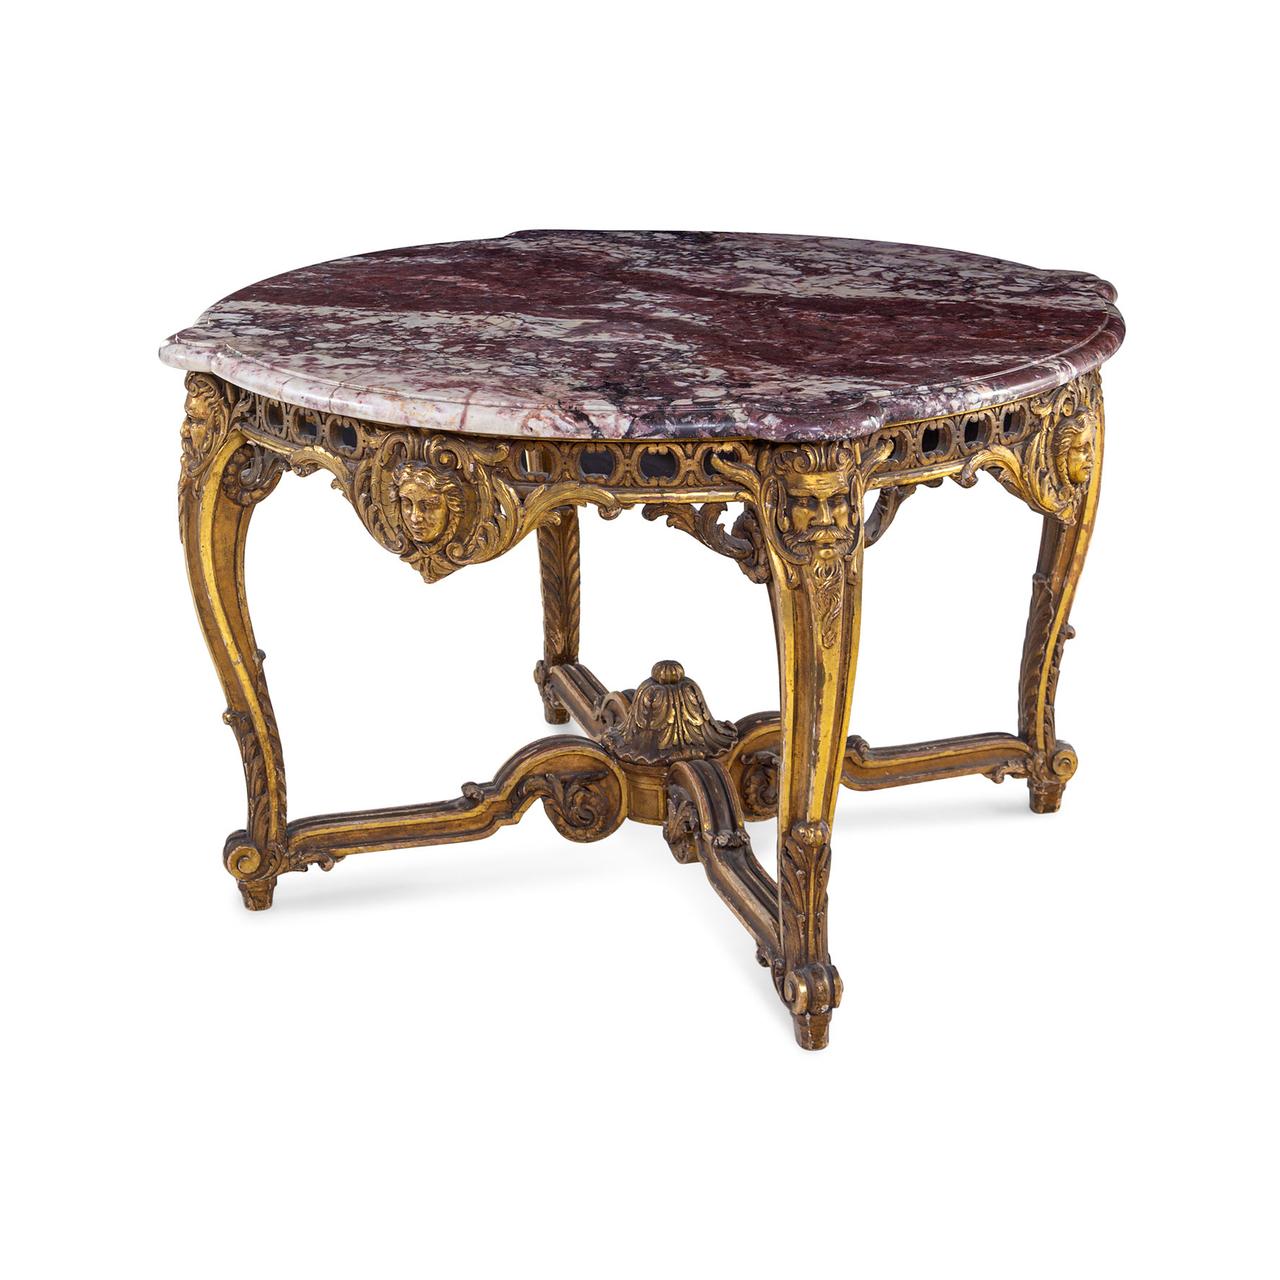 Hochwertiger Mitteltisch aus vergoldetem Holz mit Marmorplatte im Stil Louis XV

Herkunft: Französisch
Datum: 19. Jahrhundert
Abmessung: 31 Zoll x 51 Zoll.